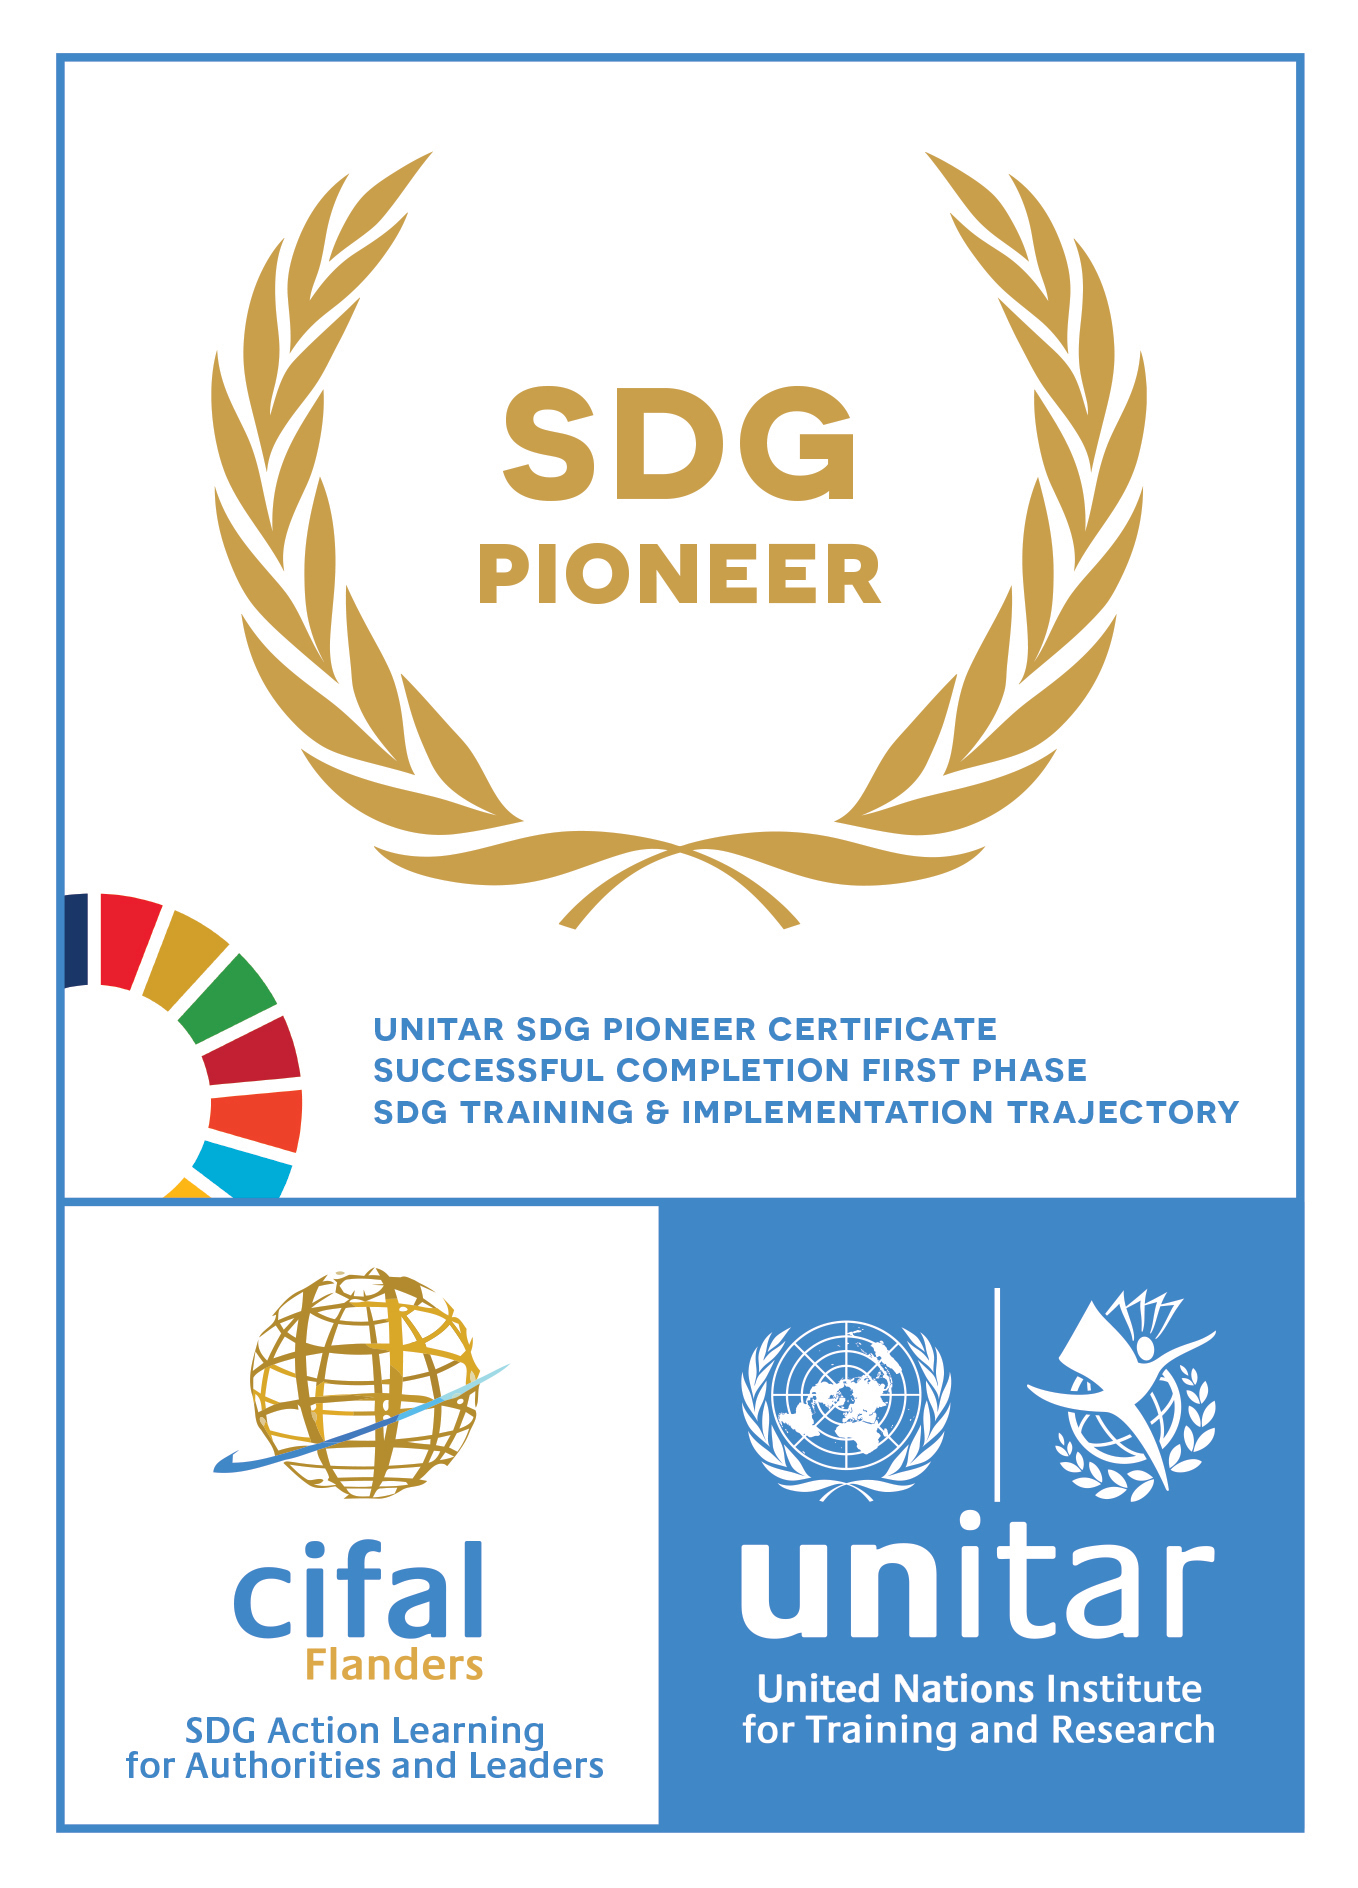 SDG Pioneer 